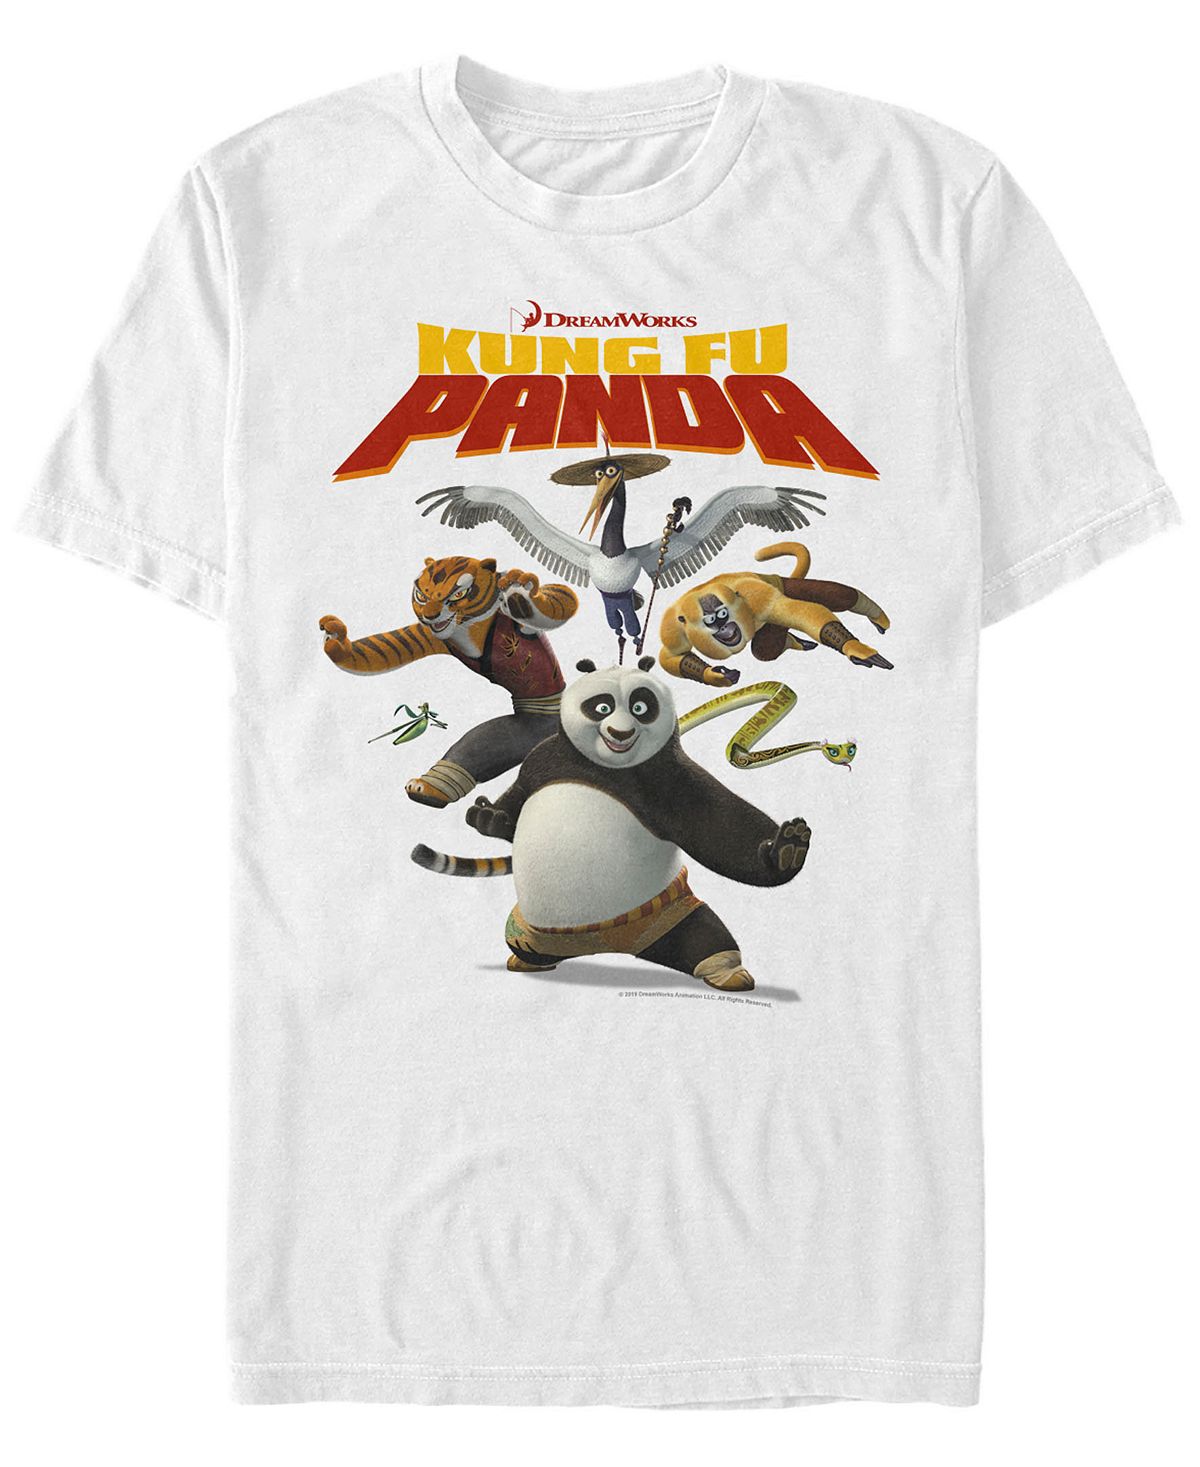 Мужская футболка с коротким рукавом по и яростная пятерка и кунг-фу панда Fifth Sun, белый волшебная раскраска кунг фу панда 2 11105